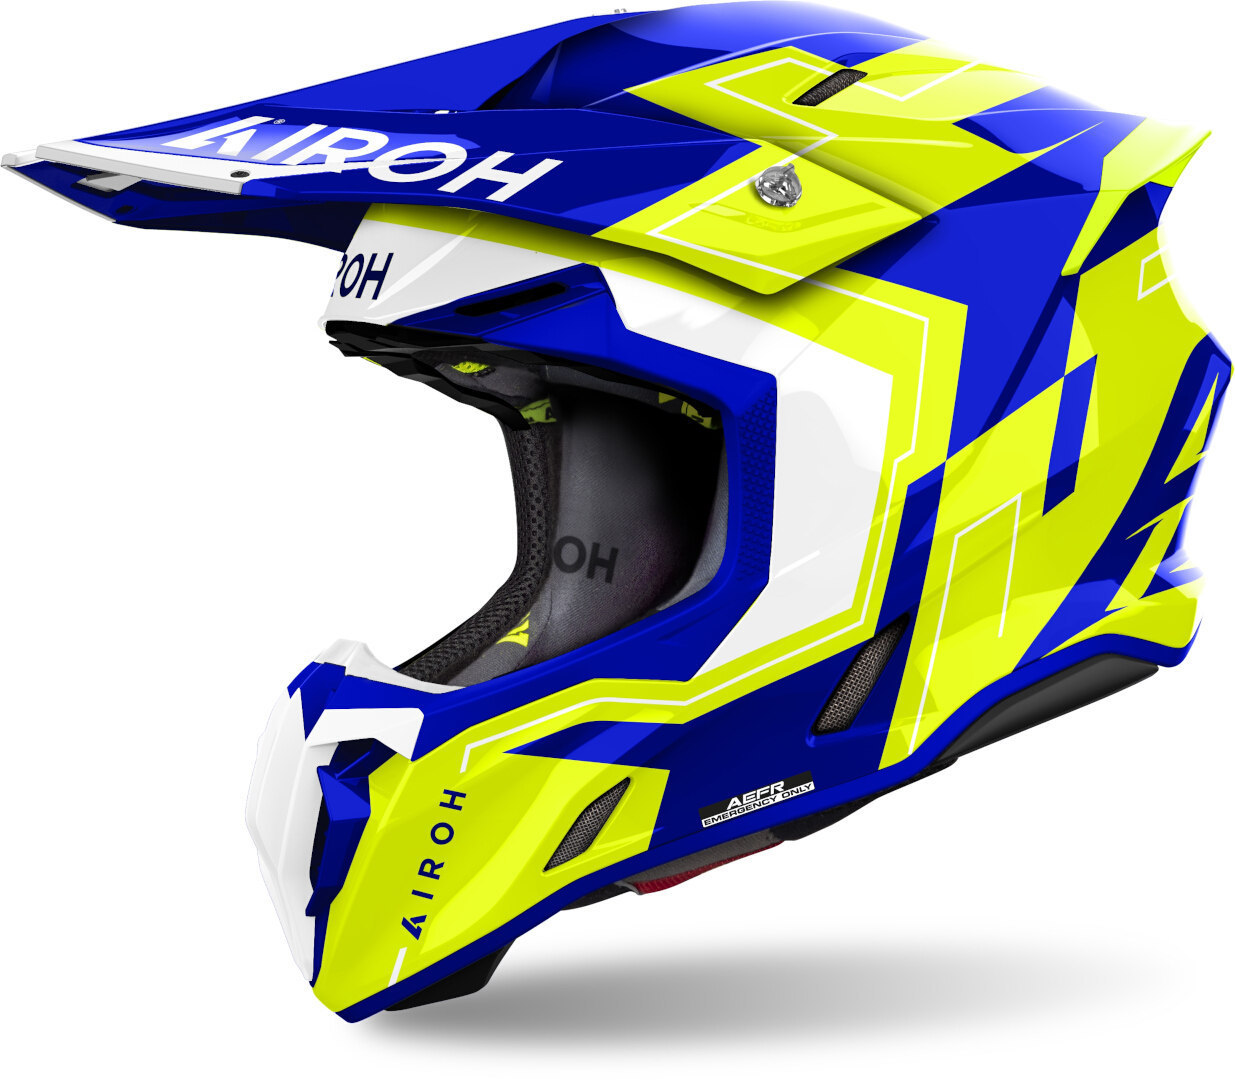 Airoh Twist 3 Dizzy Motocross Helm, blau-gelb, Größe M